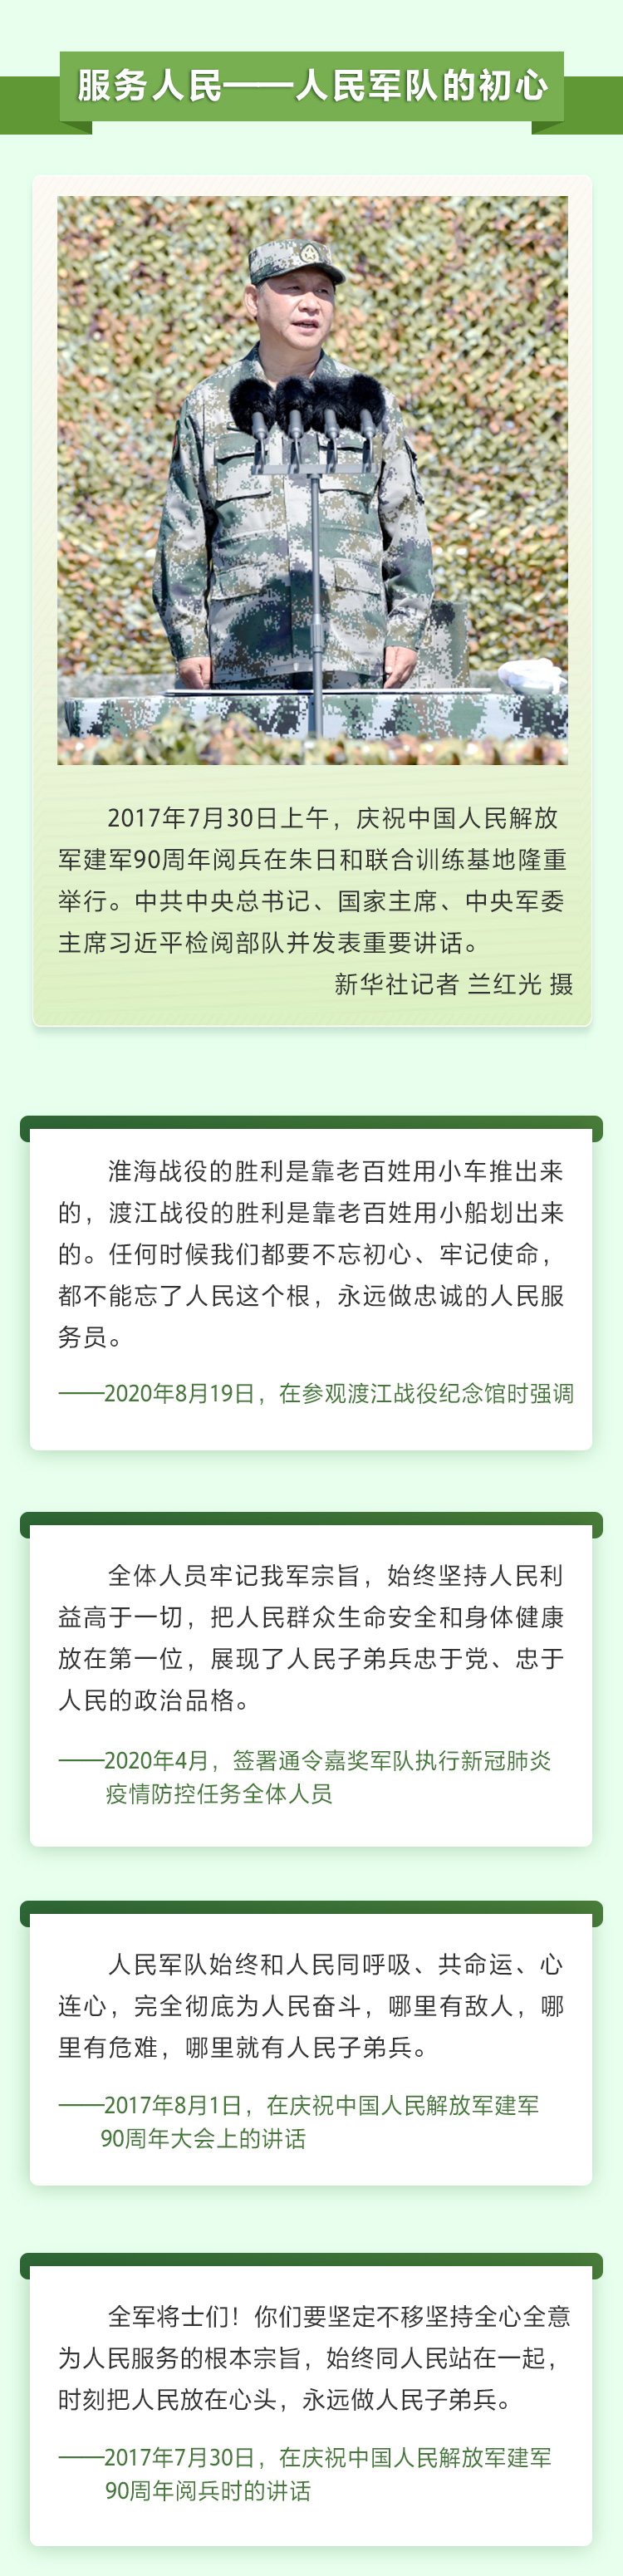 习近平谈军队建设4 人民网-中国共产党新闻网.jpg